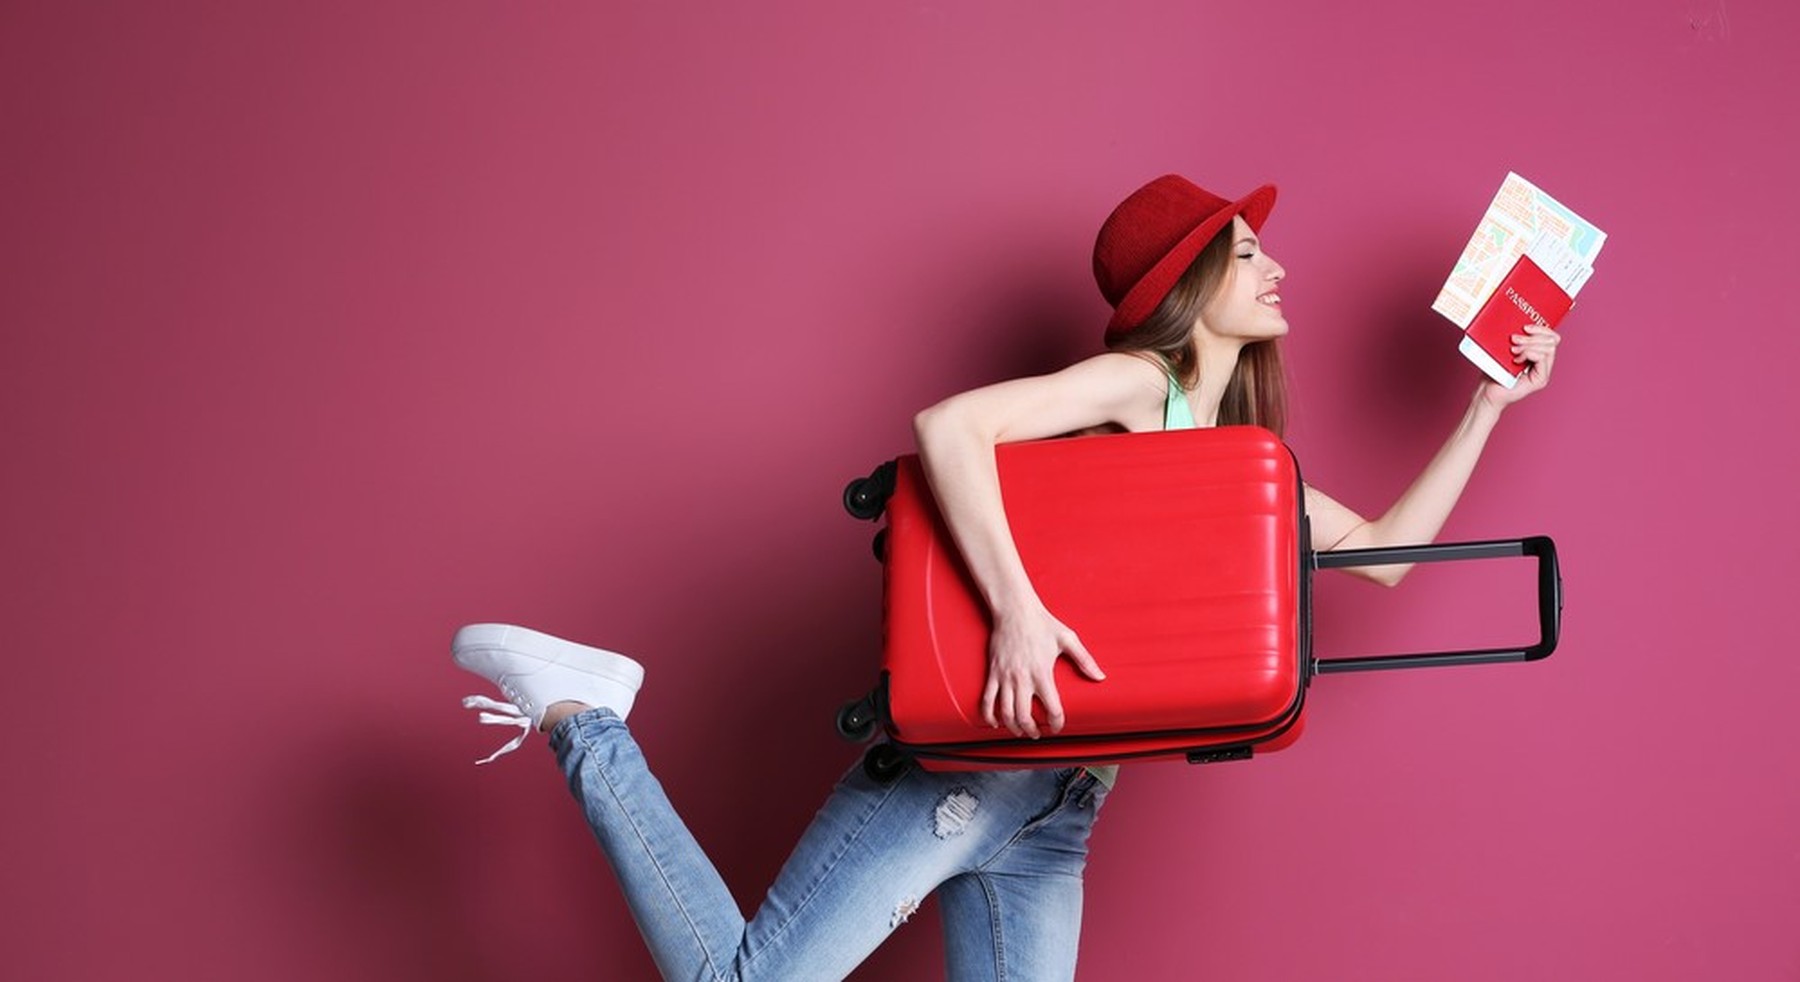 Mujer joven con un gorro rojo. Bajo un brazo lleva una maleta de mano roja también y en la otra mano sostiene un pasaporte y unos billetes de avión.